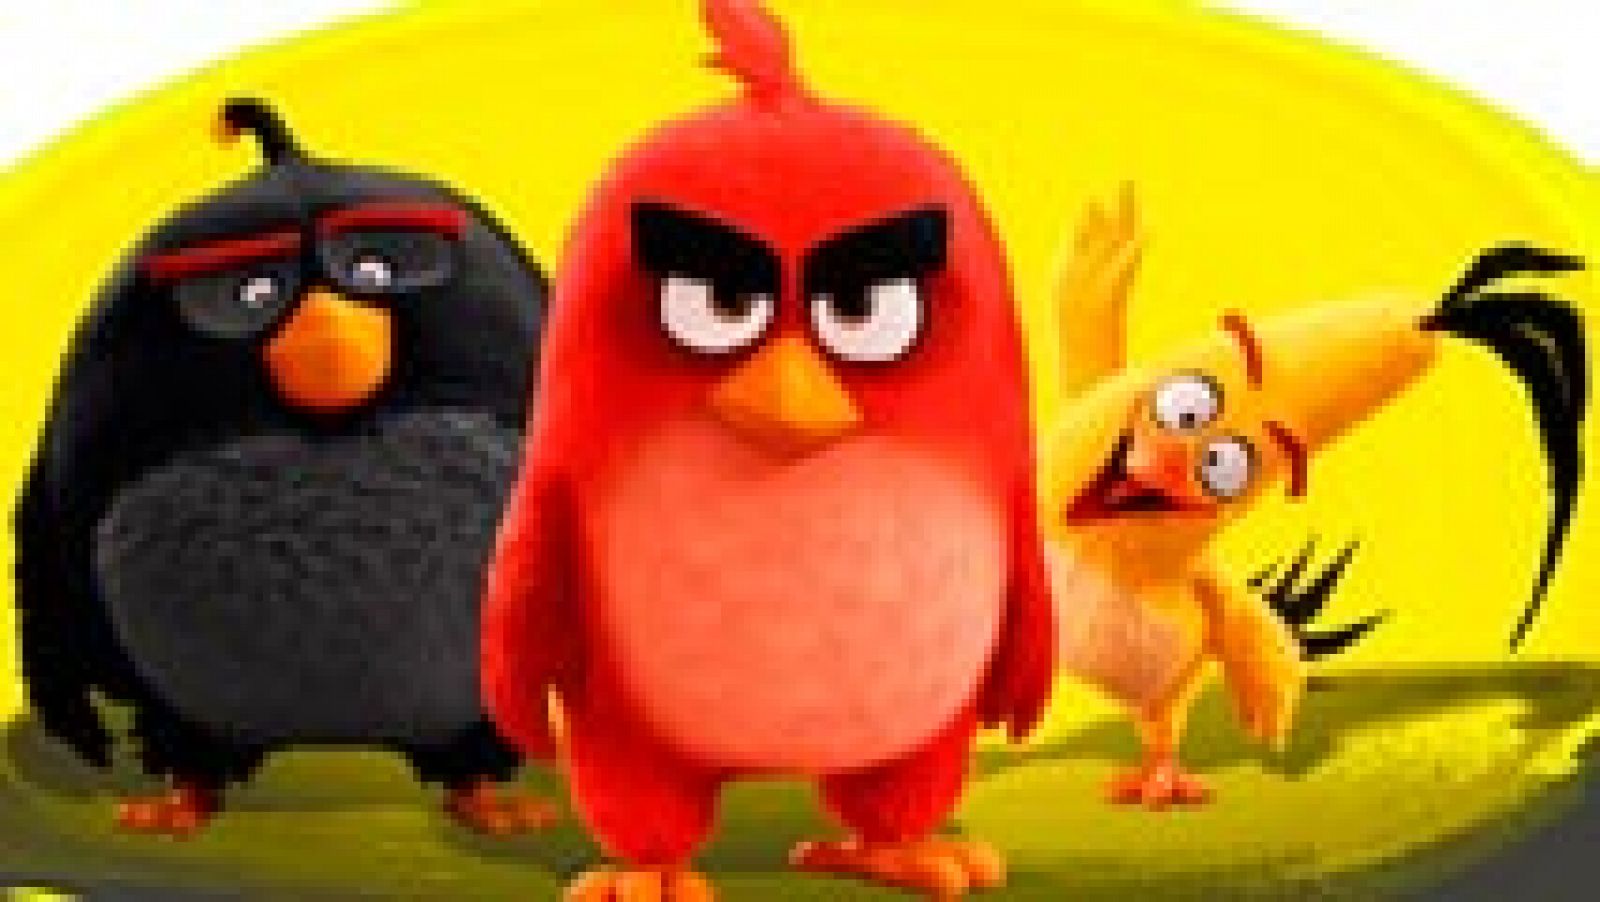 Los 'Angry birds' desvelan su secreto en la gran pantalla 